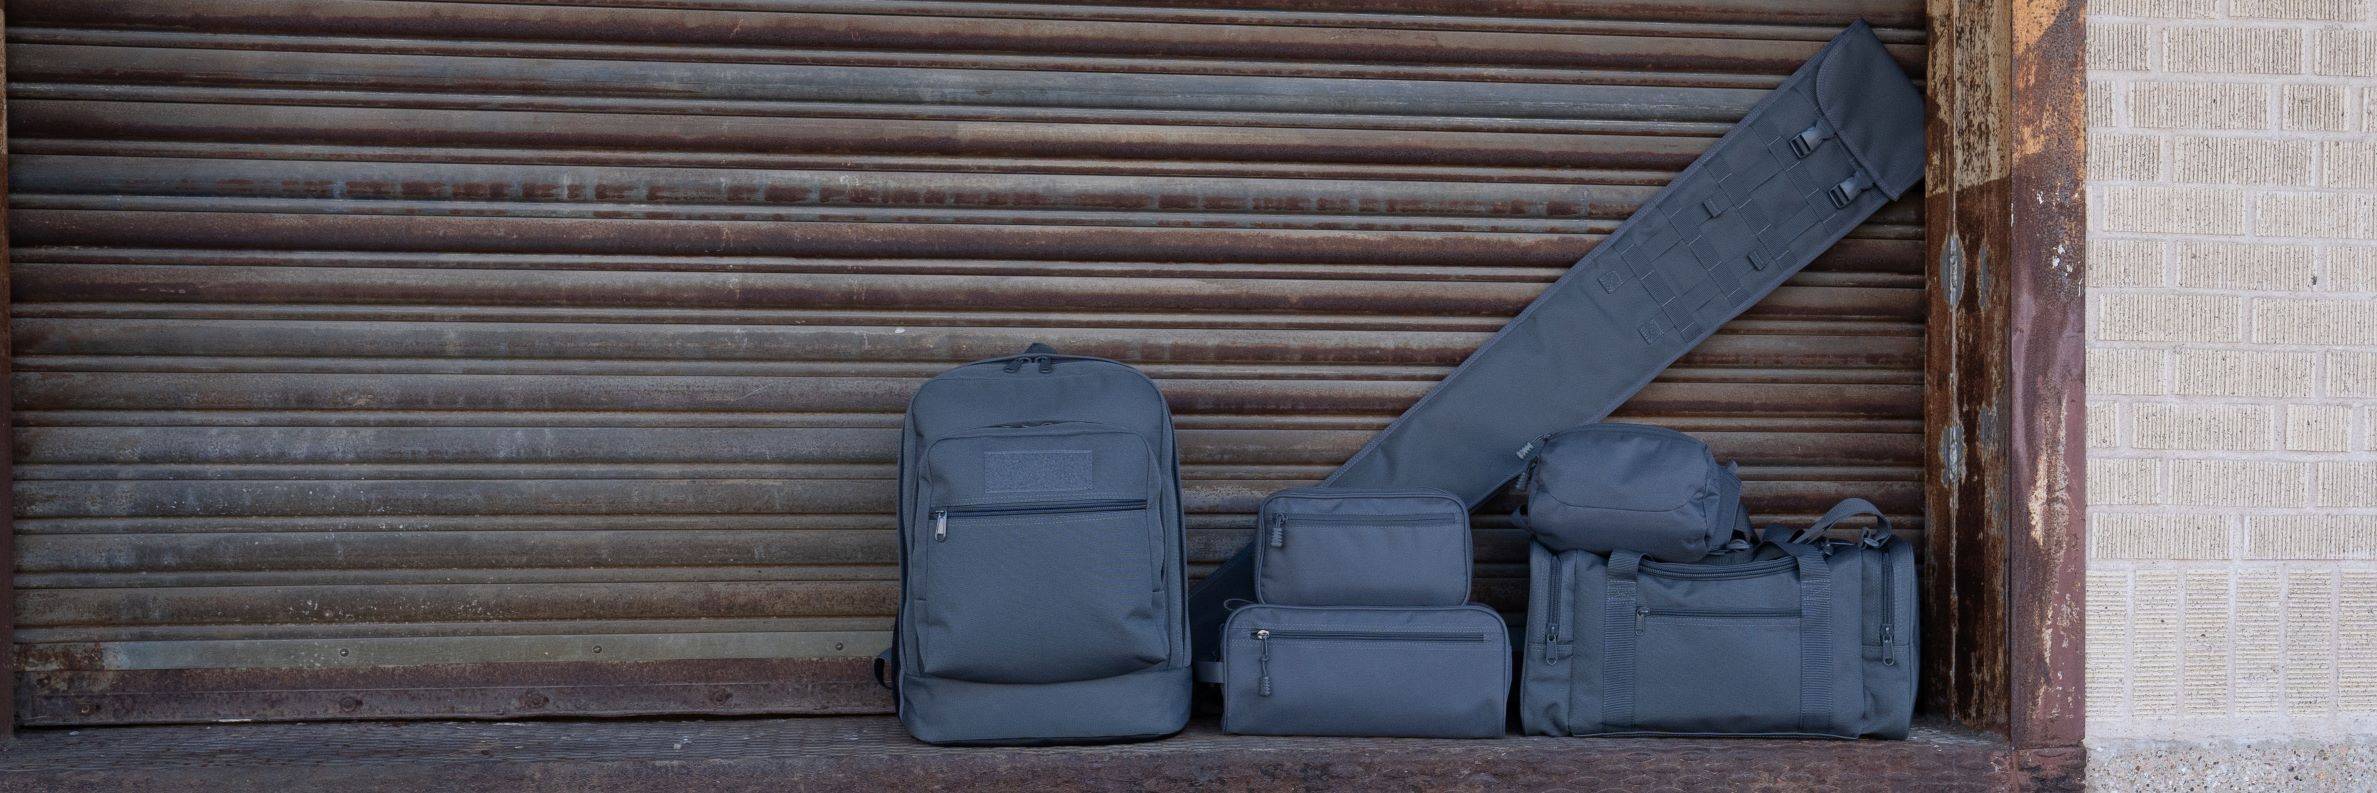 Gun Metal Gray Travel Bags